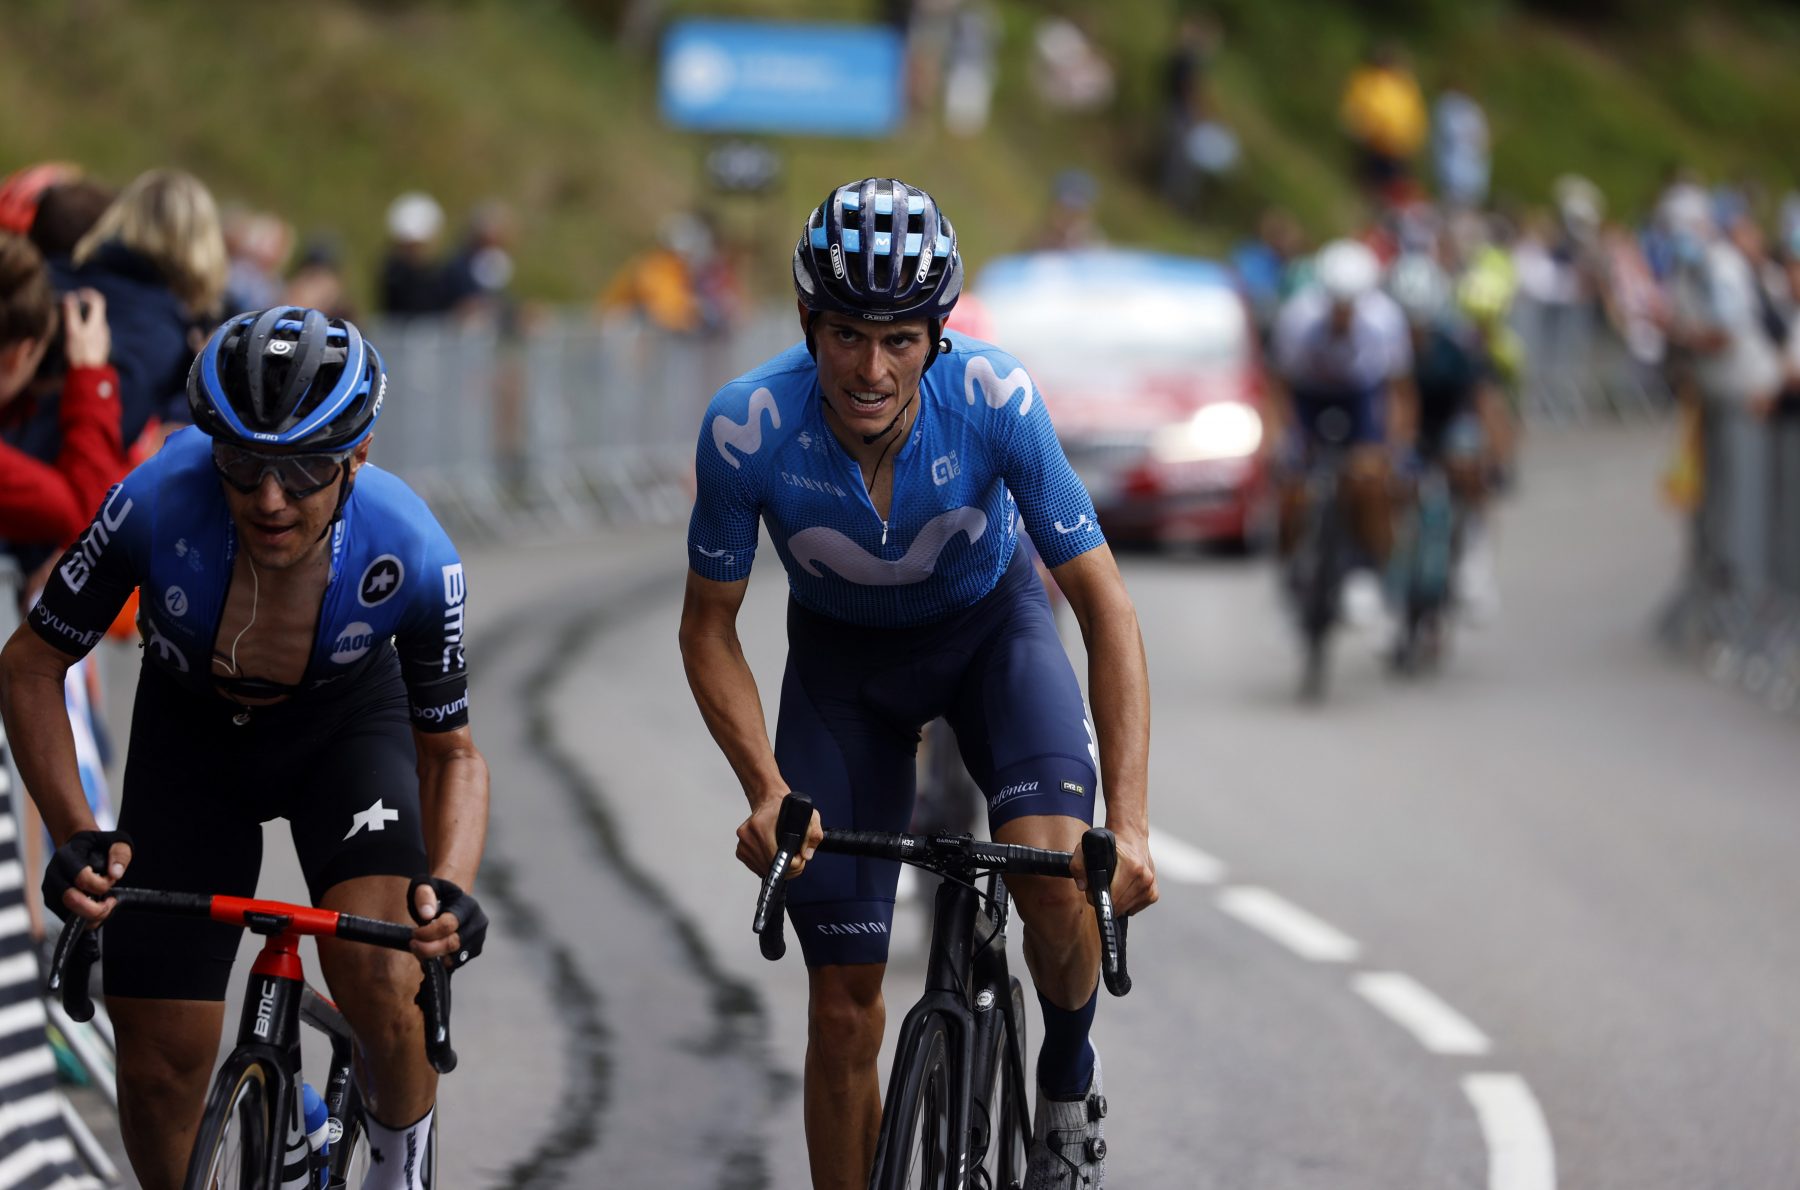 News' image‛Primer duro esfuerzo de montaña para Mas y Valverde en Dauphiné’